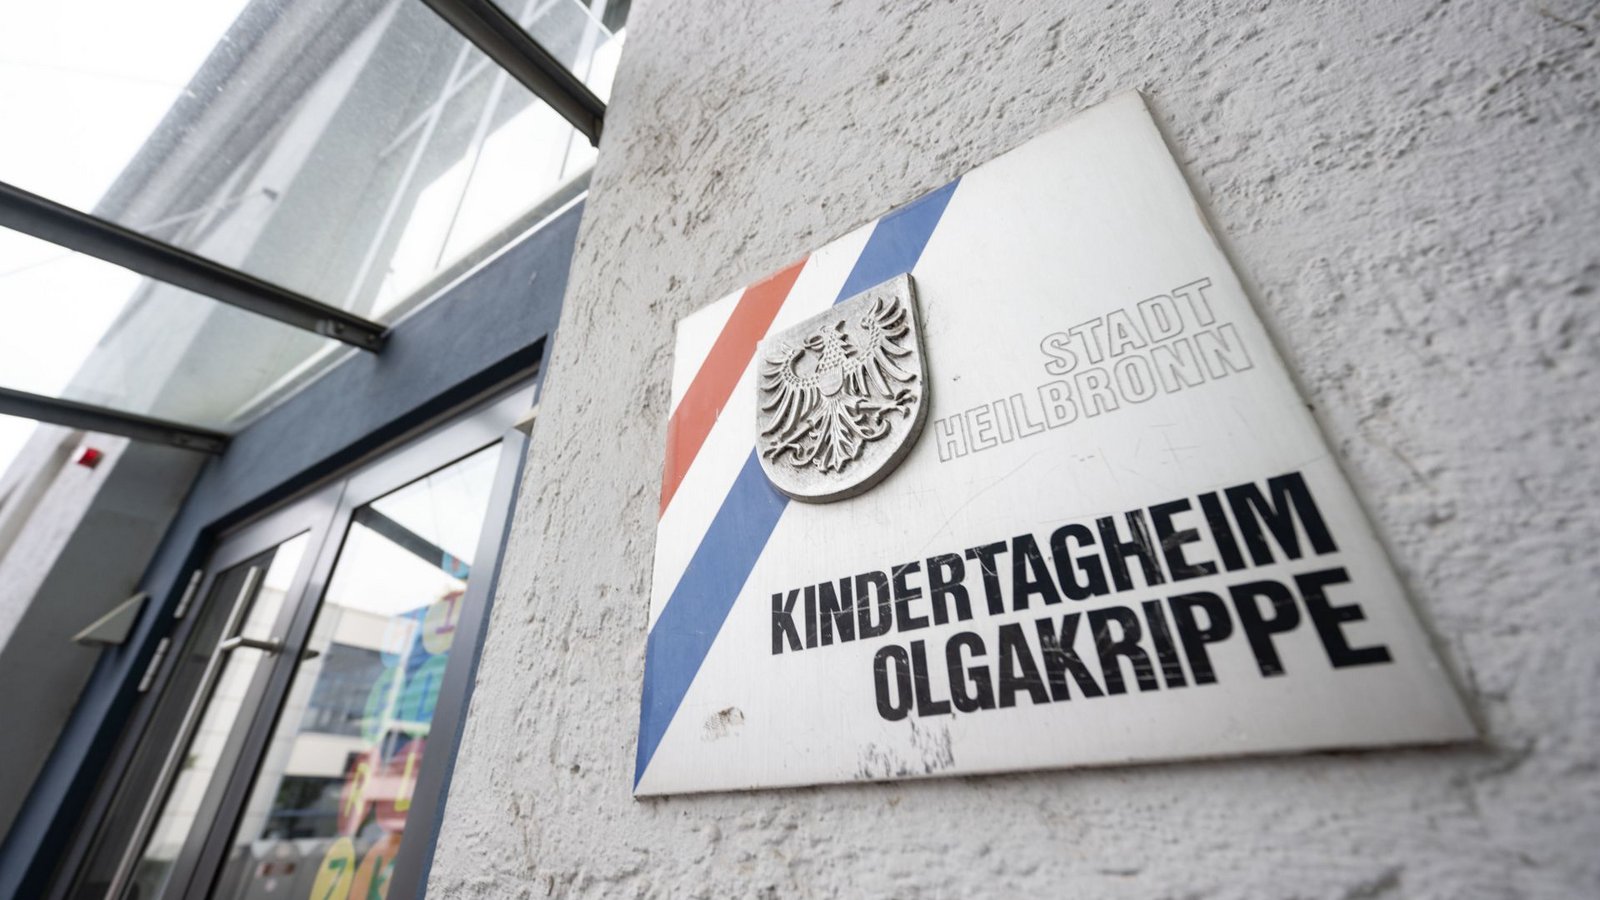 In der Olgakrippe in Heilbronn dürfen Kinder viel mitbestimmen.Foto: dpa/Marijan Murat